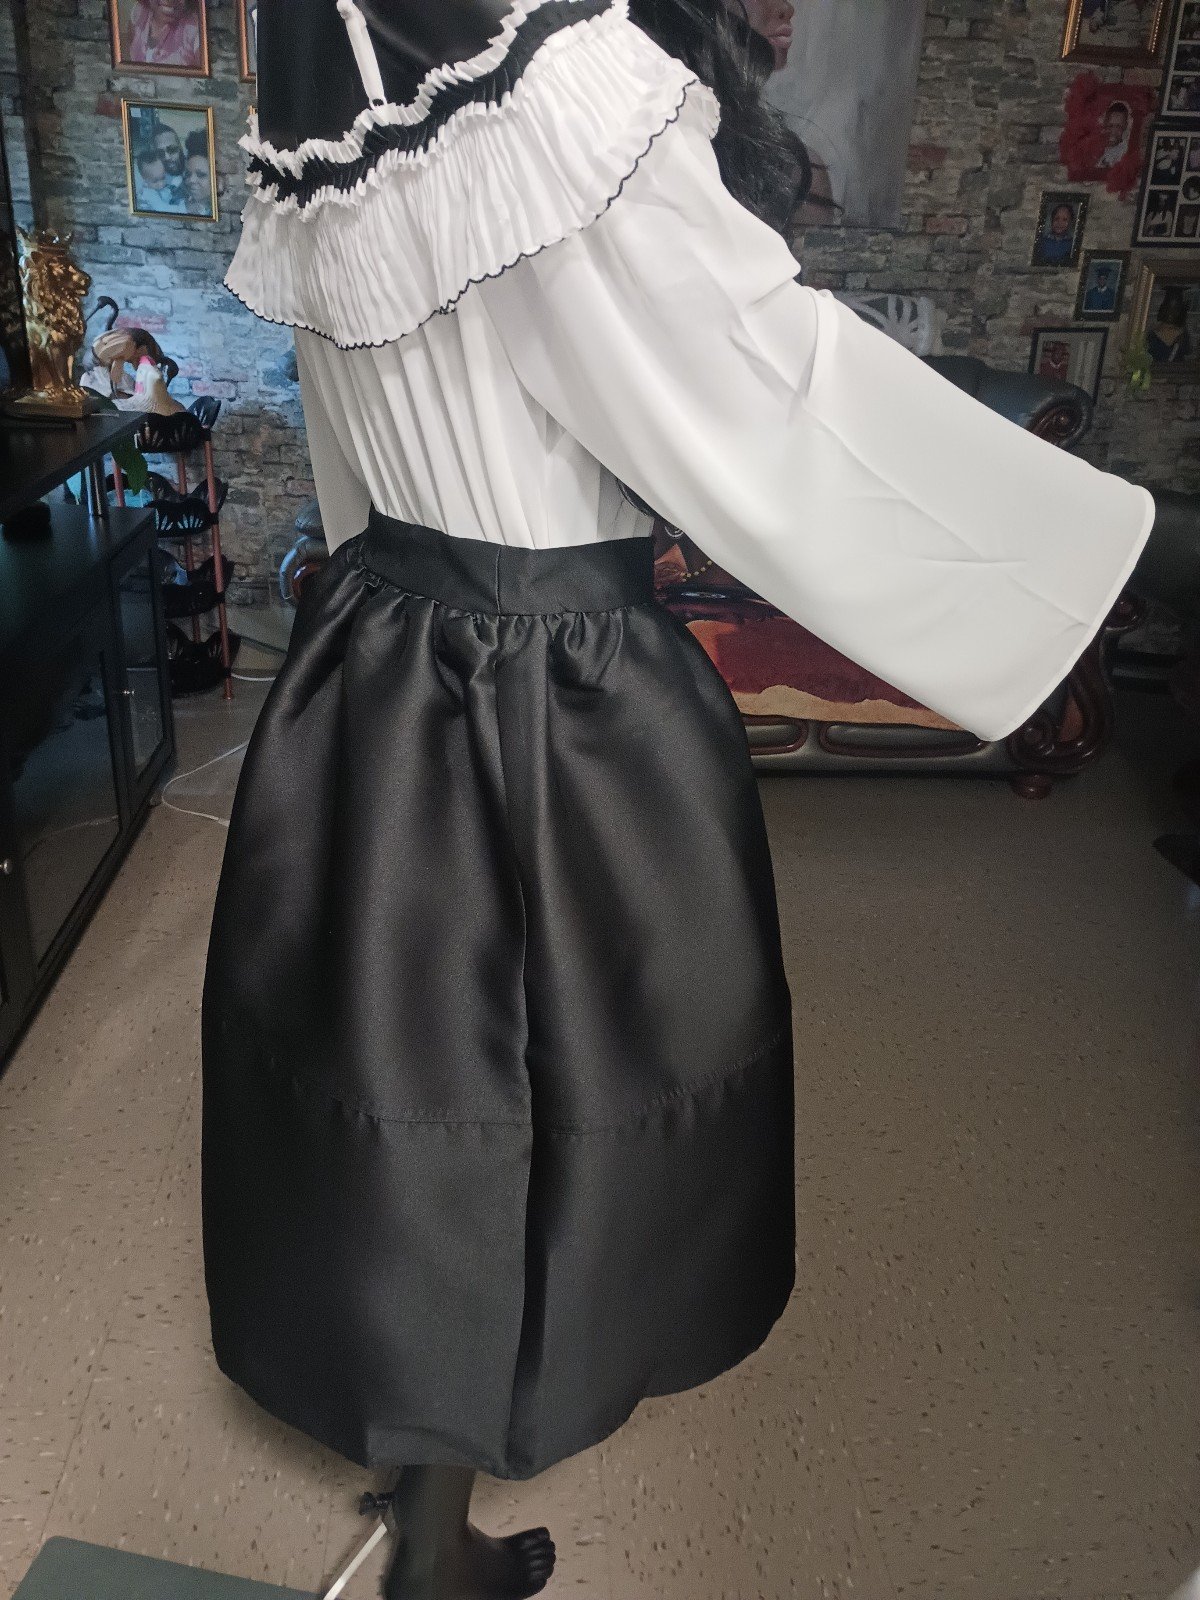 large discount Haute Monde 2 piece skirt set size large lpon4lYx3 Wholesale